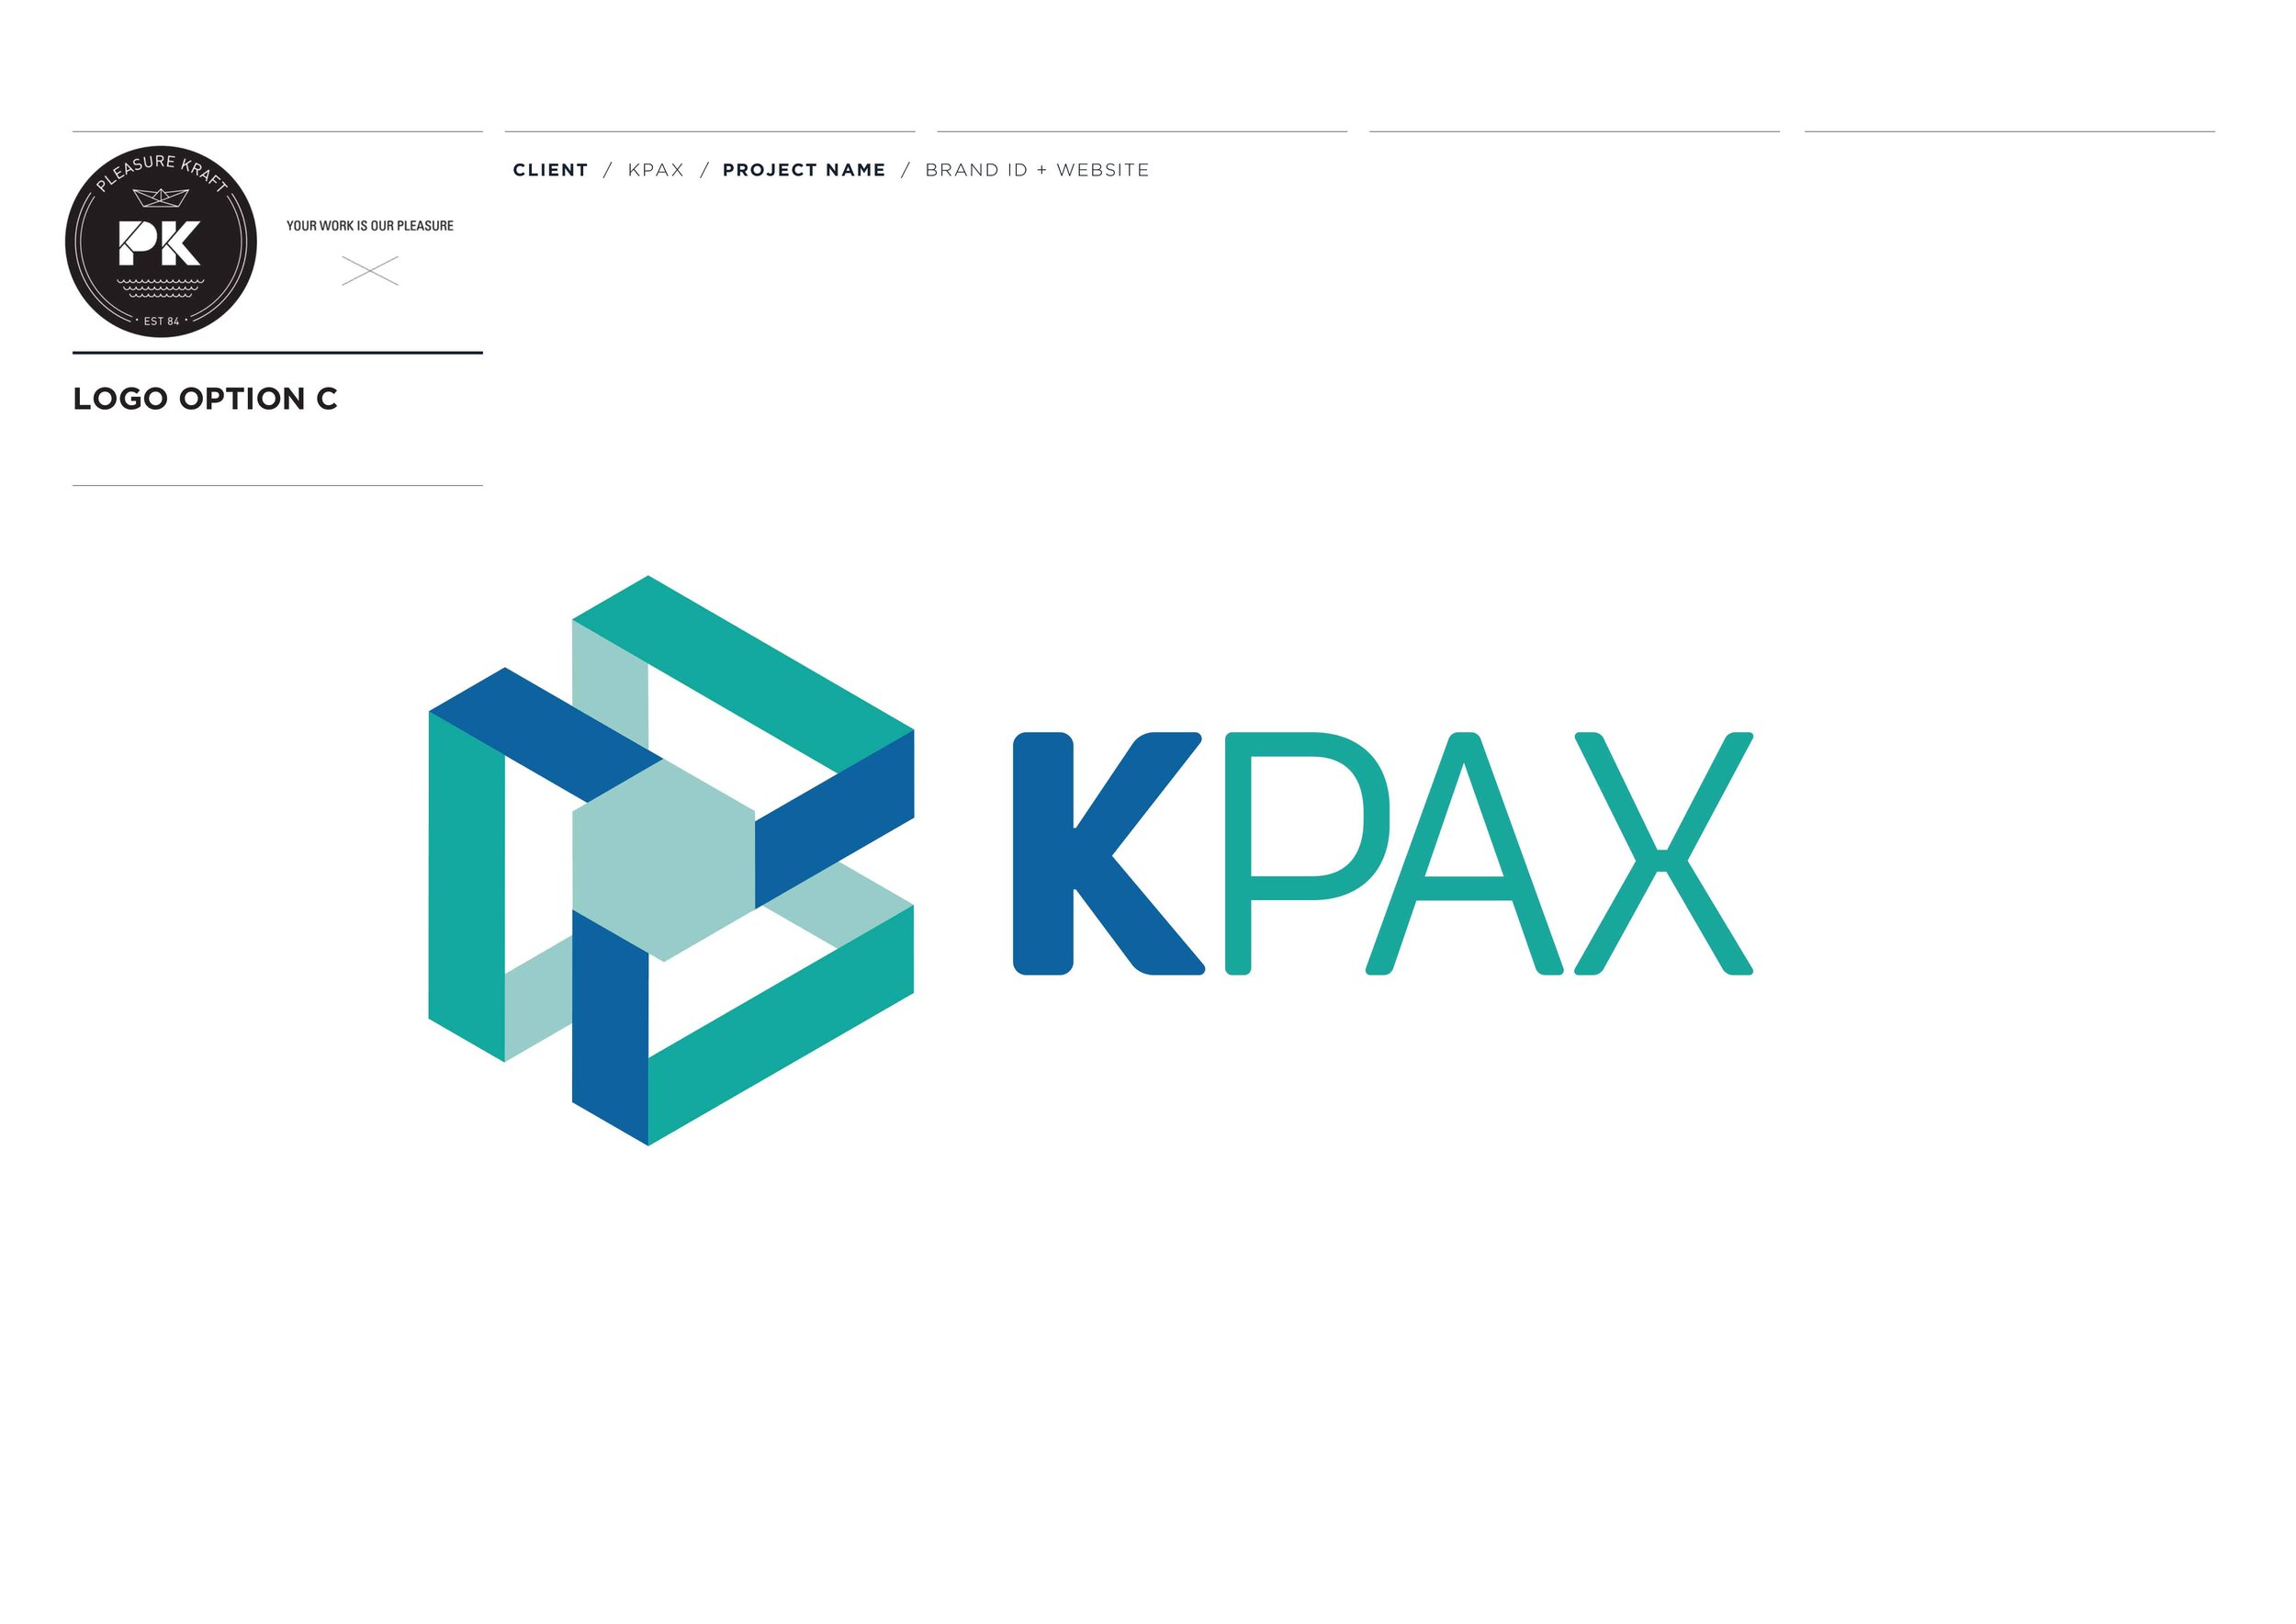 KPAX LOGO+GRAPHIC CONCEPTS PRES-8 copy.jpg